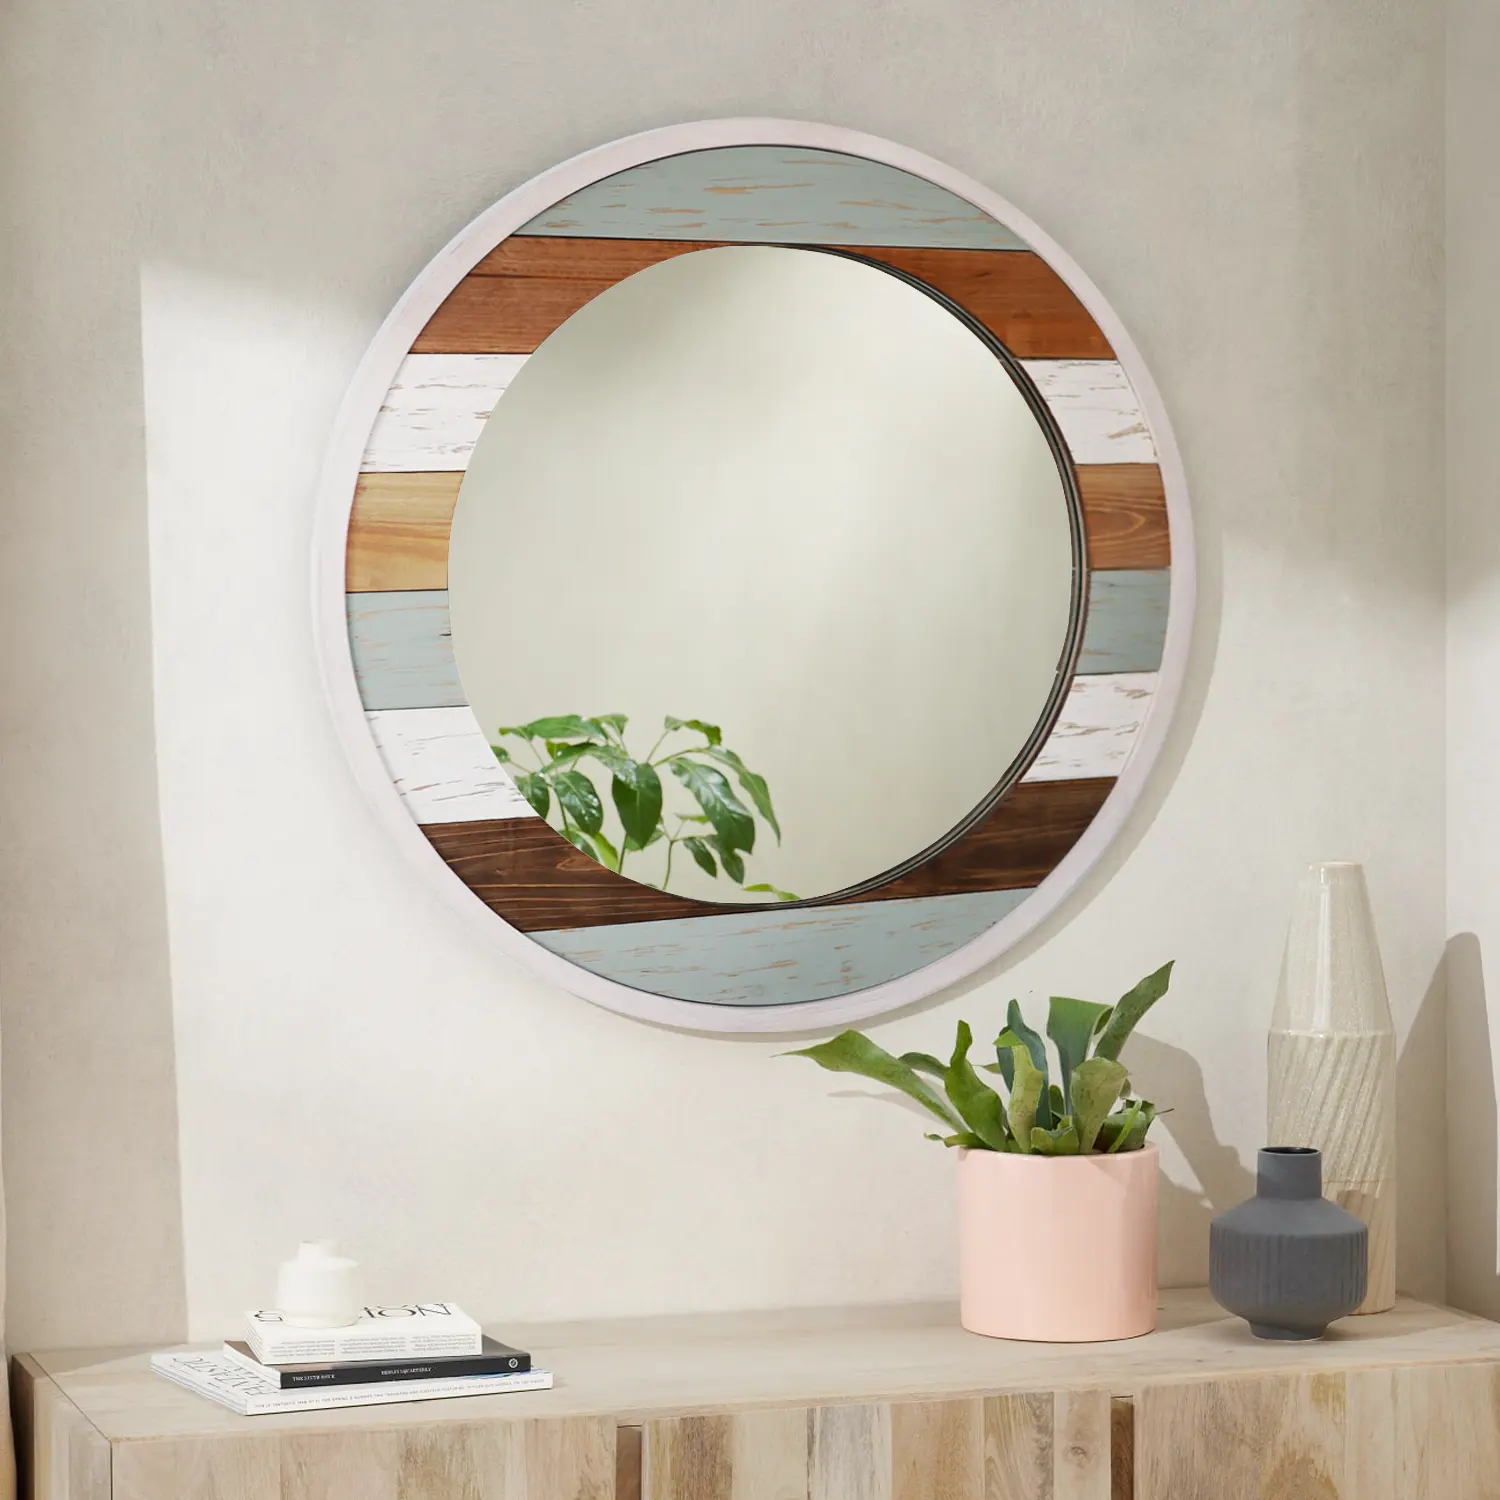 친환경 수제 화이트 워시 나무 접시 스플 라이스 프레임 라운드 홈 거실 장식 벽 거울